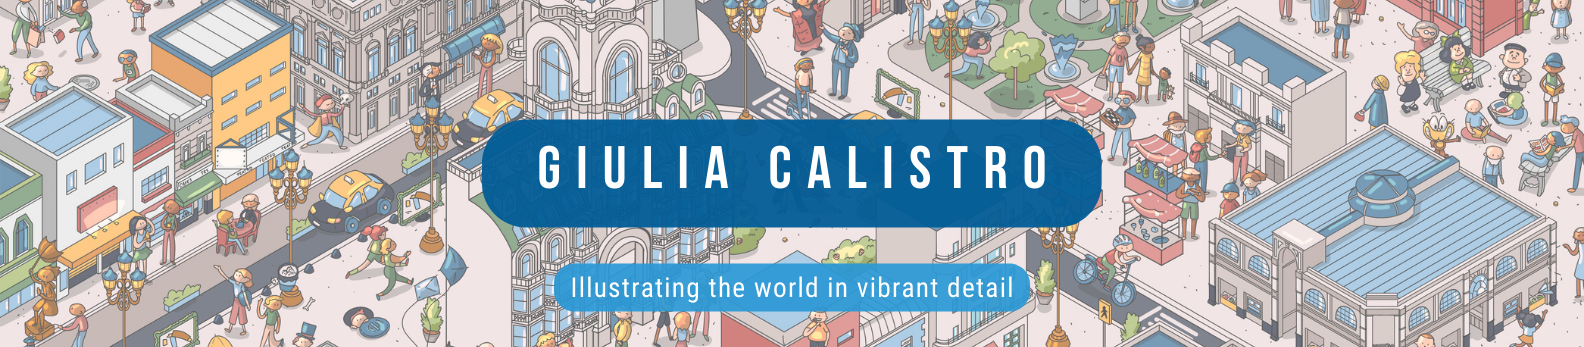 Giulia Calistro's profile banner